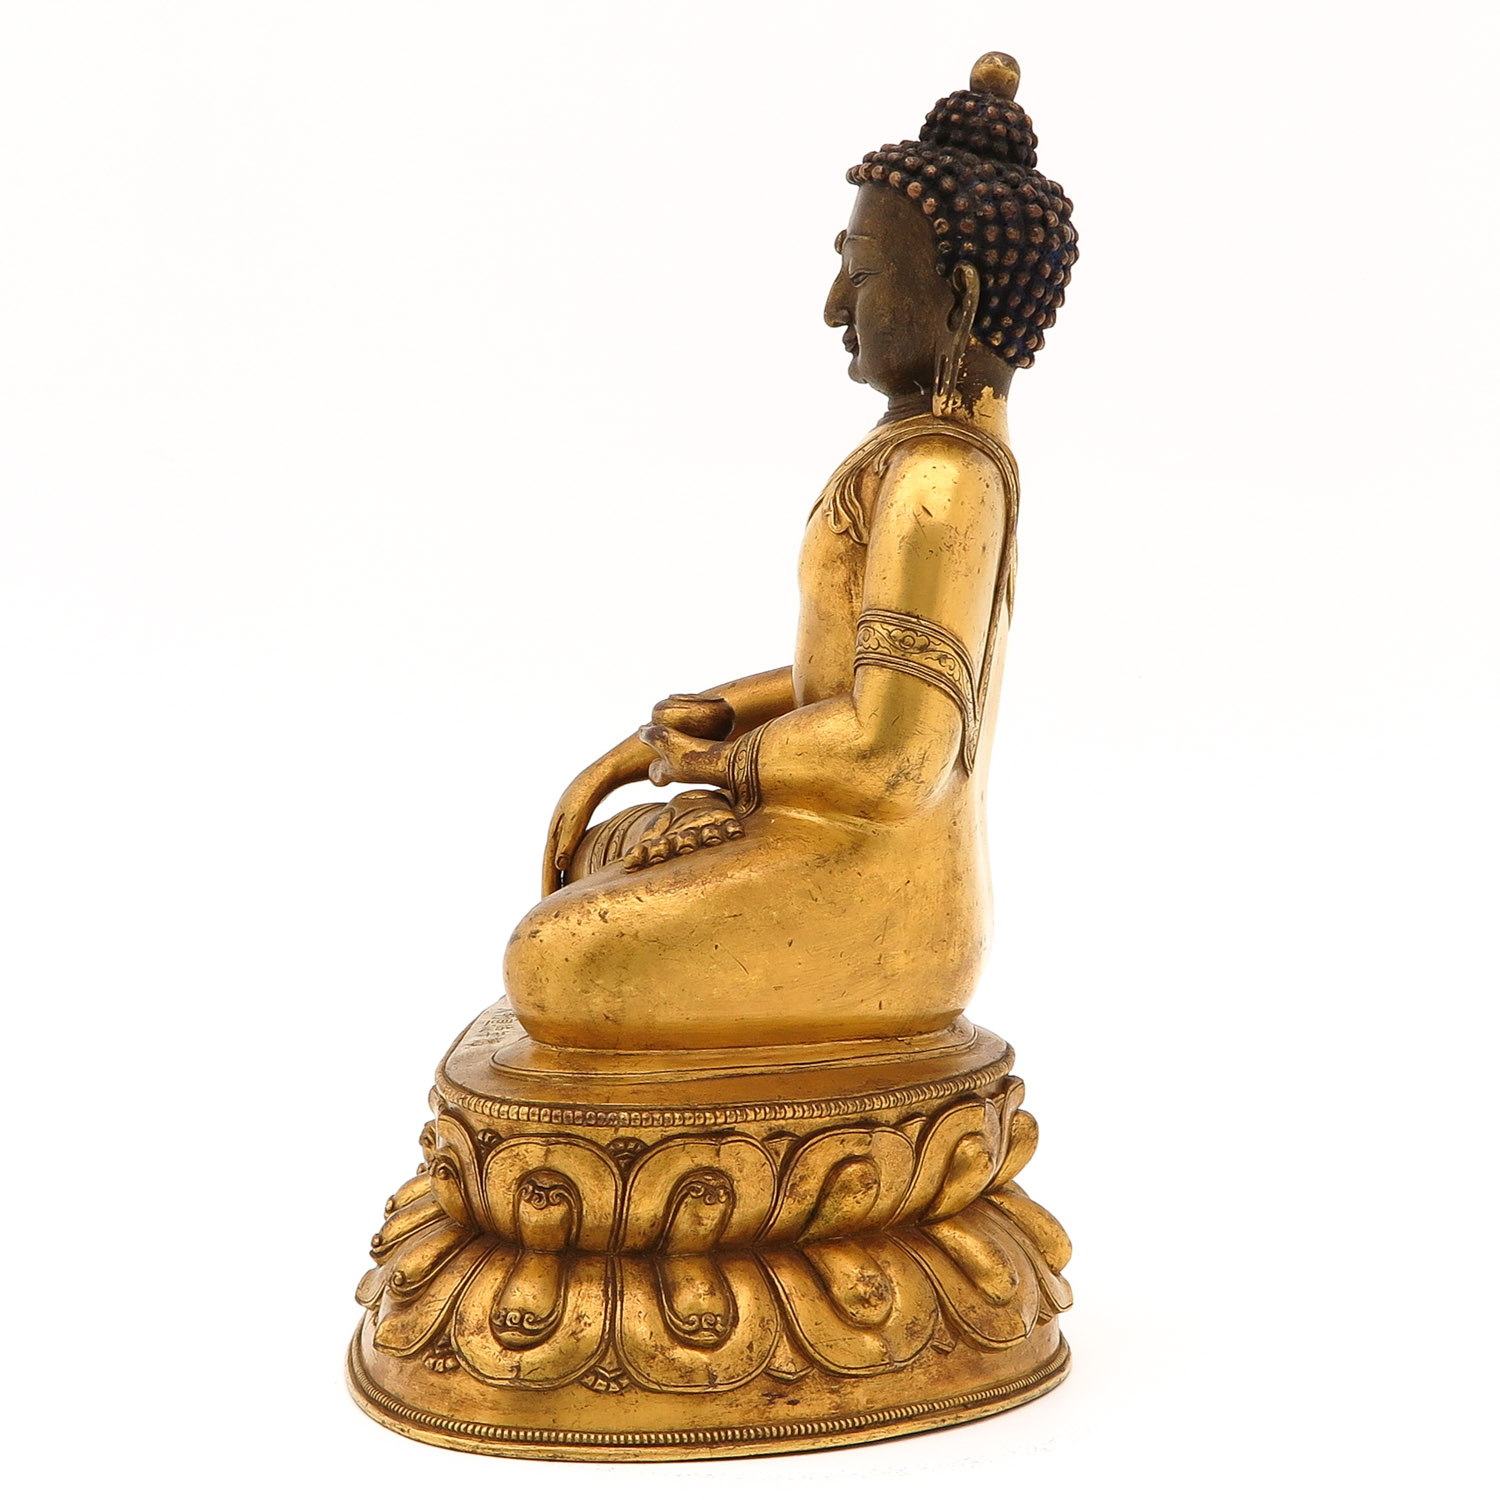 A Bronze Buddha Sculpture - Image 2 of 10